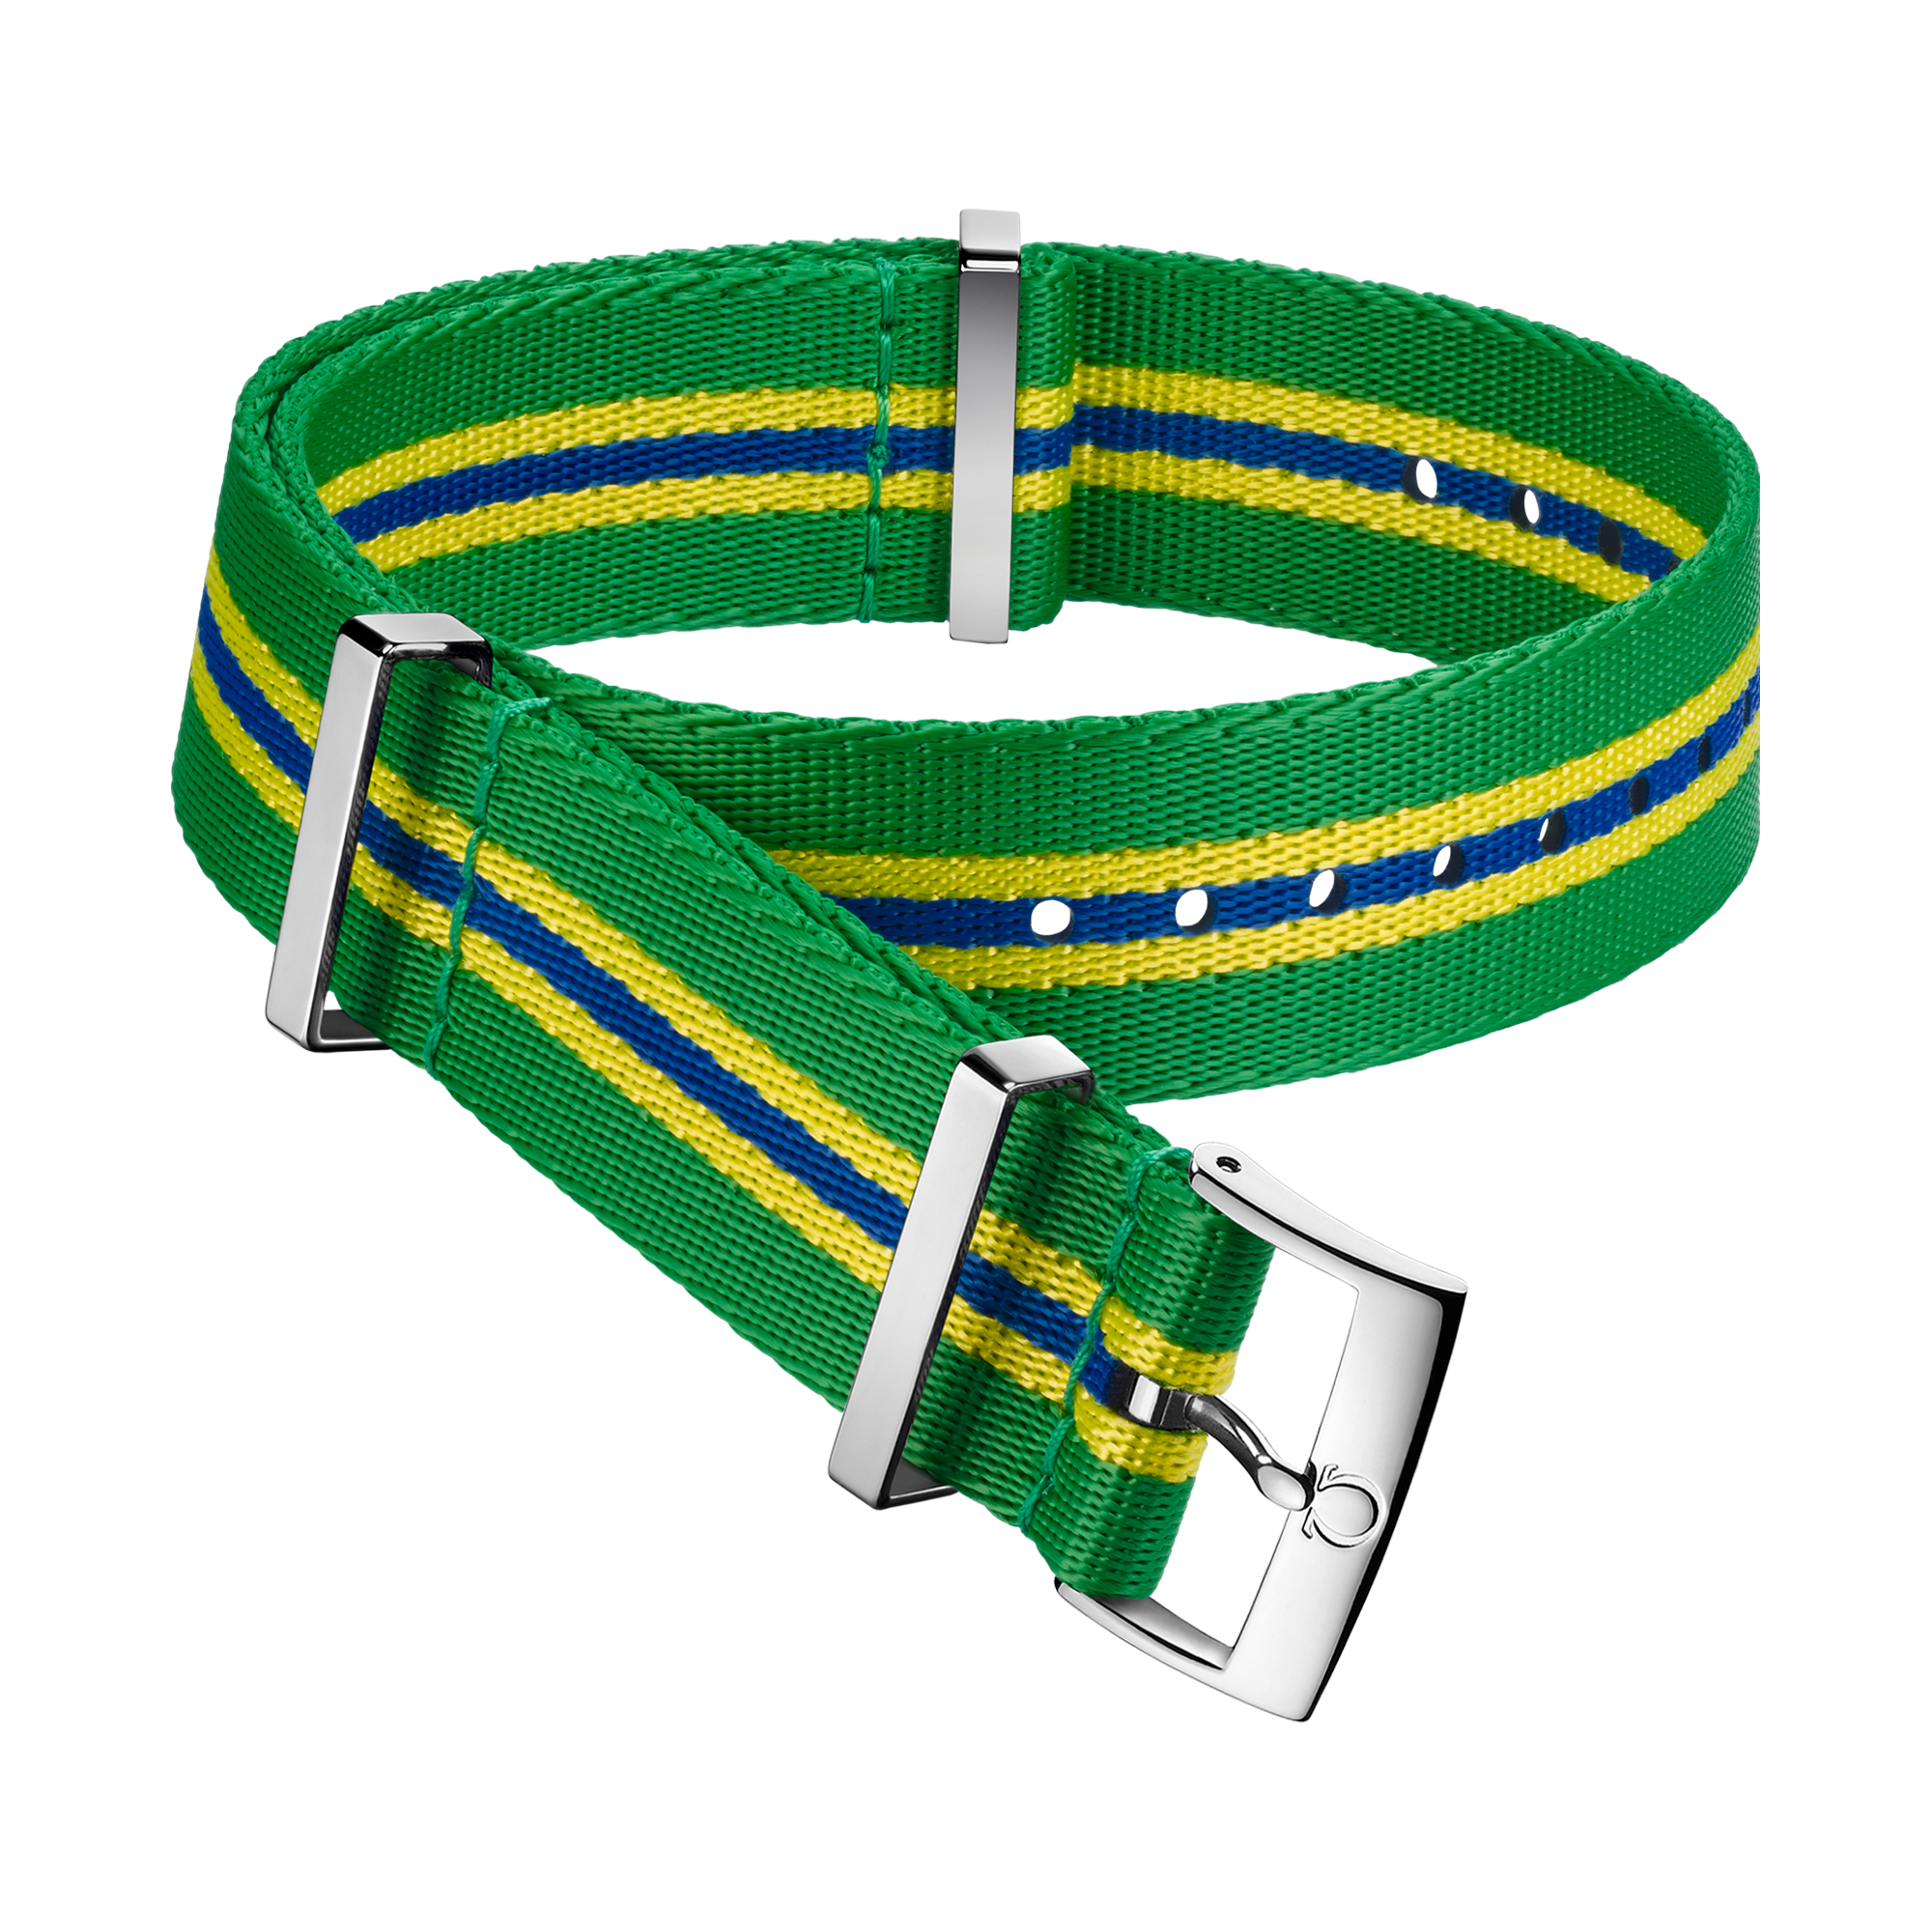 NATO strap - Polyamide 5-stripe green, yellow and blue strap - 031CWZ010678w